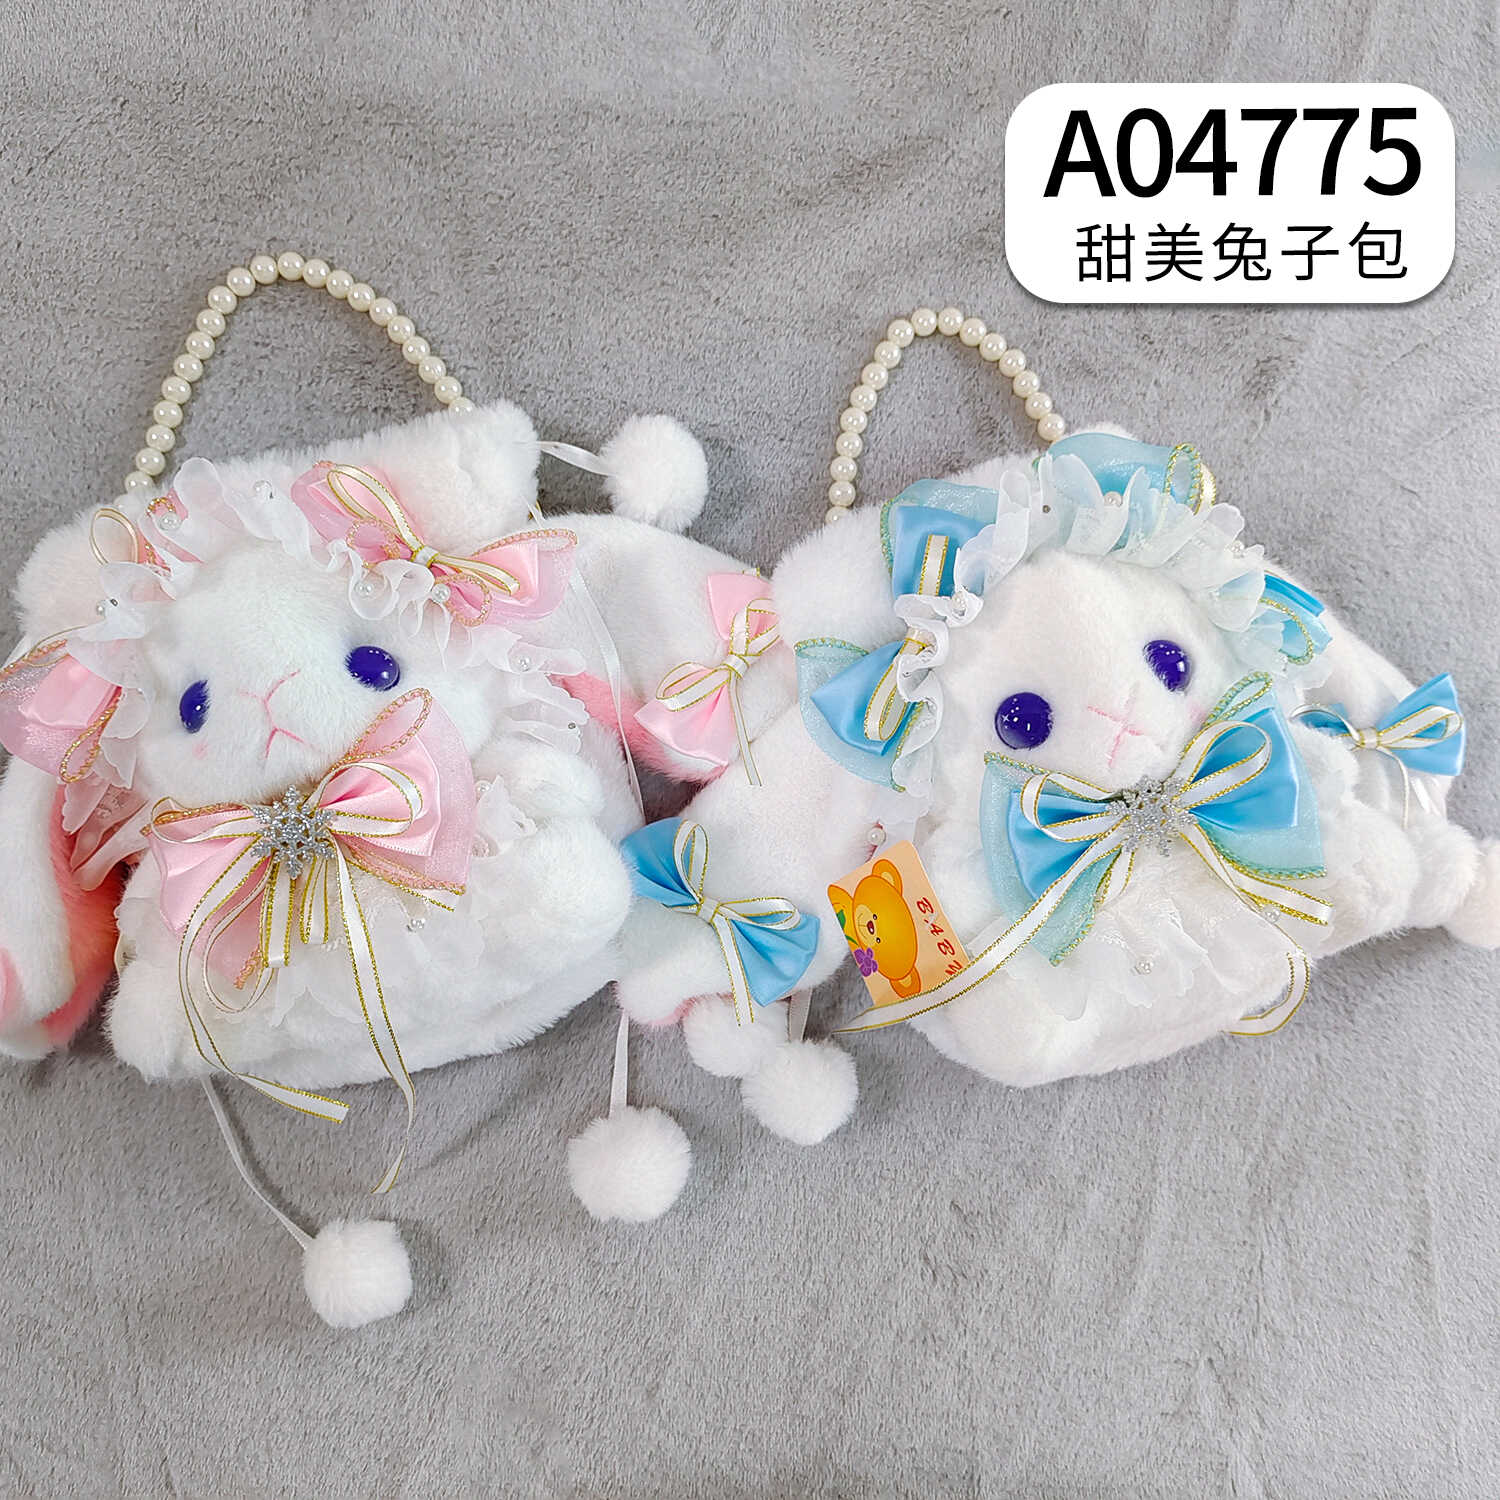 A04775 包包 21厘米 甜美兔子包 